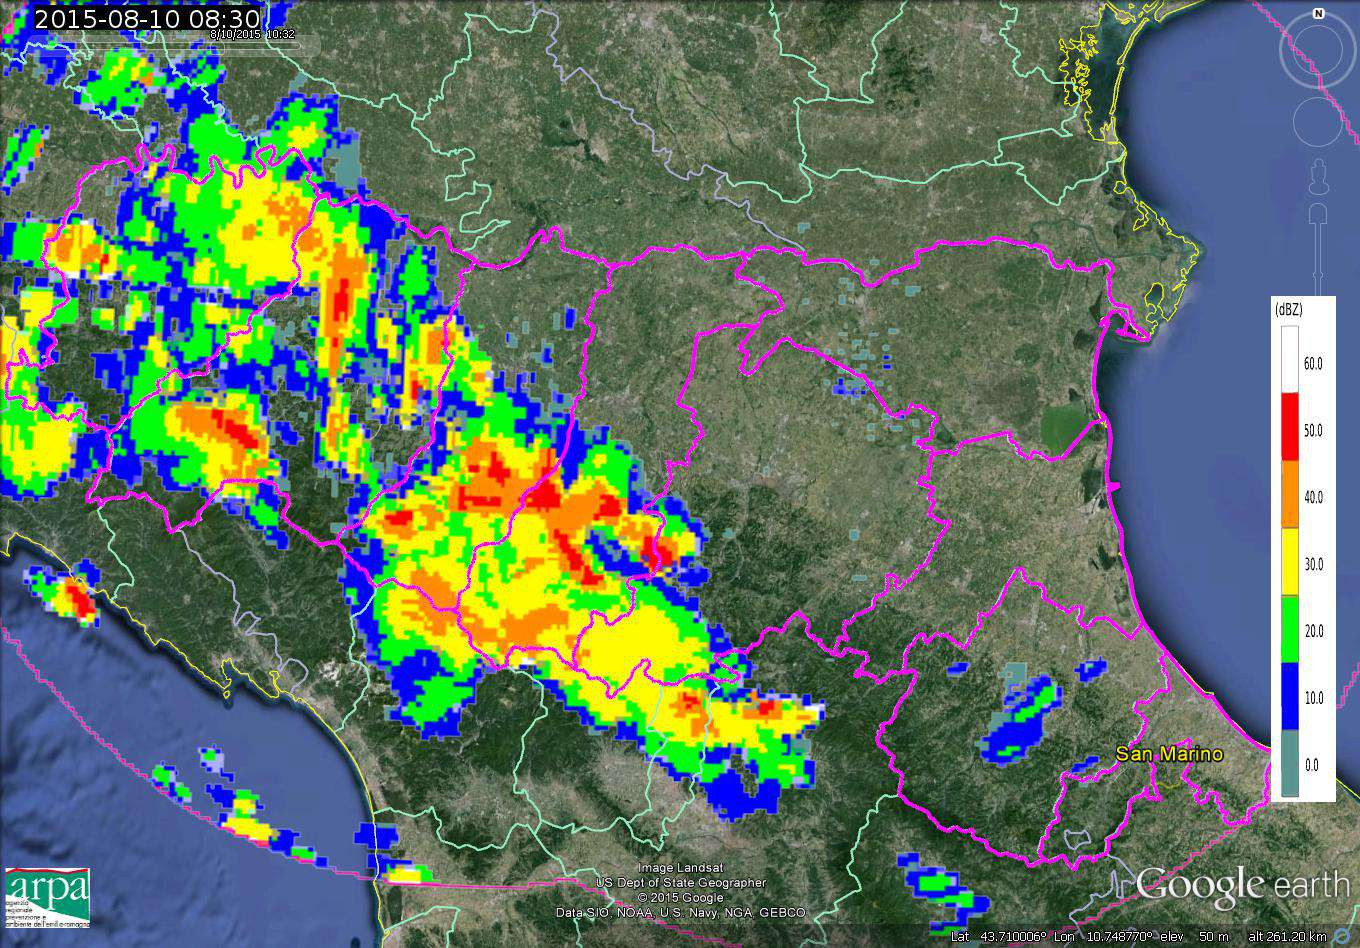 Parma e Reggio-Emilia alle 09:15 UTC.